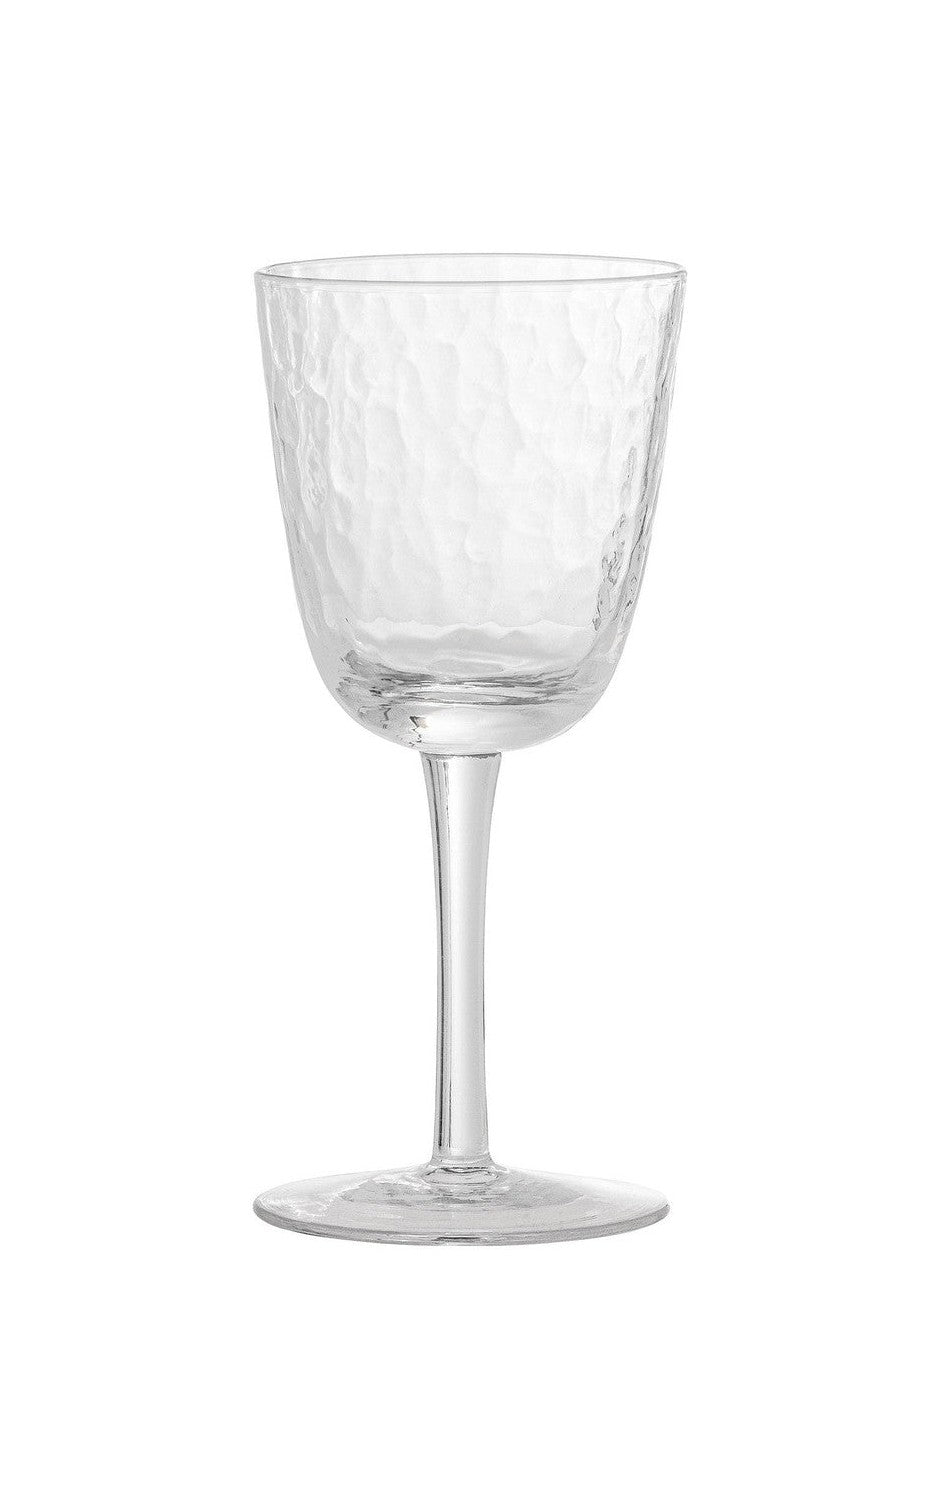 Bloomingville Asali Weinglas, klar, Glas